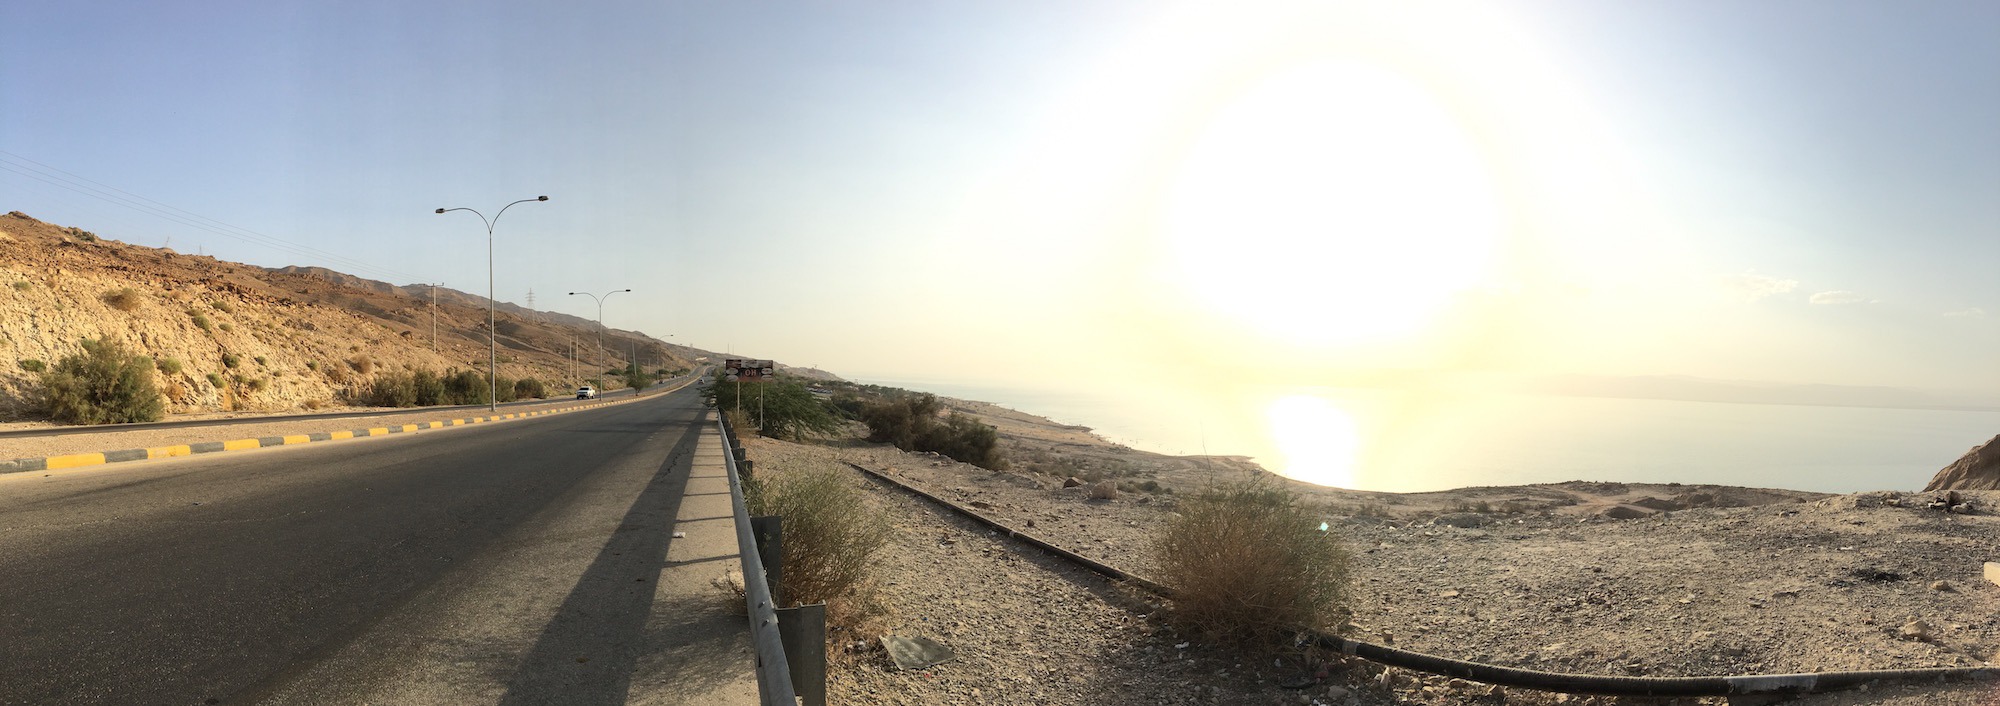 Caminhei 2 km pelo acostamento da estrada entre Amman Beach e o Mövenpick. (Foto: Nathalia Tavolieri)